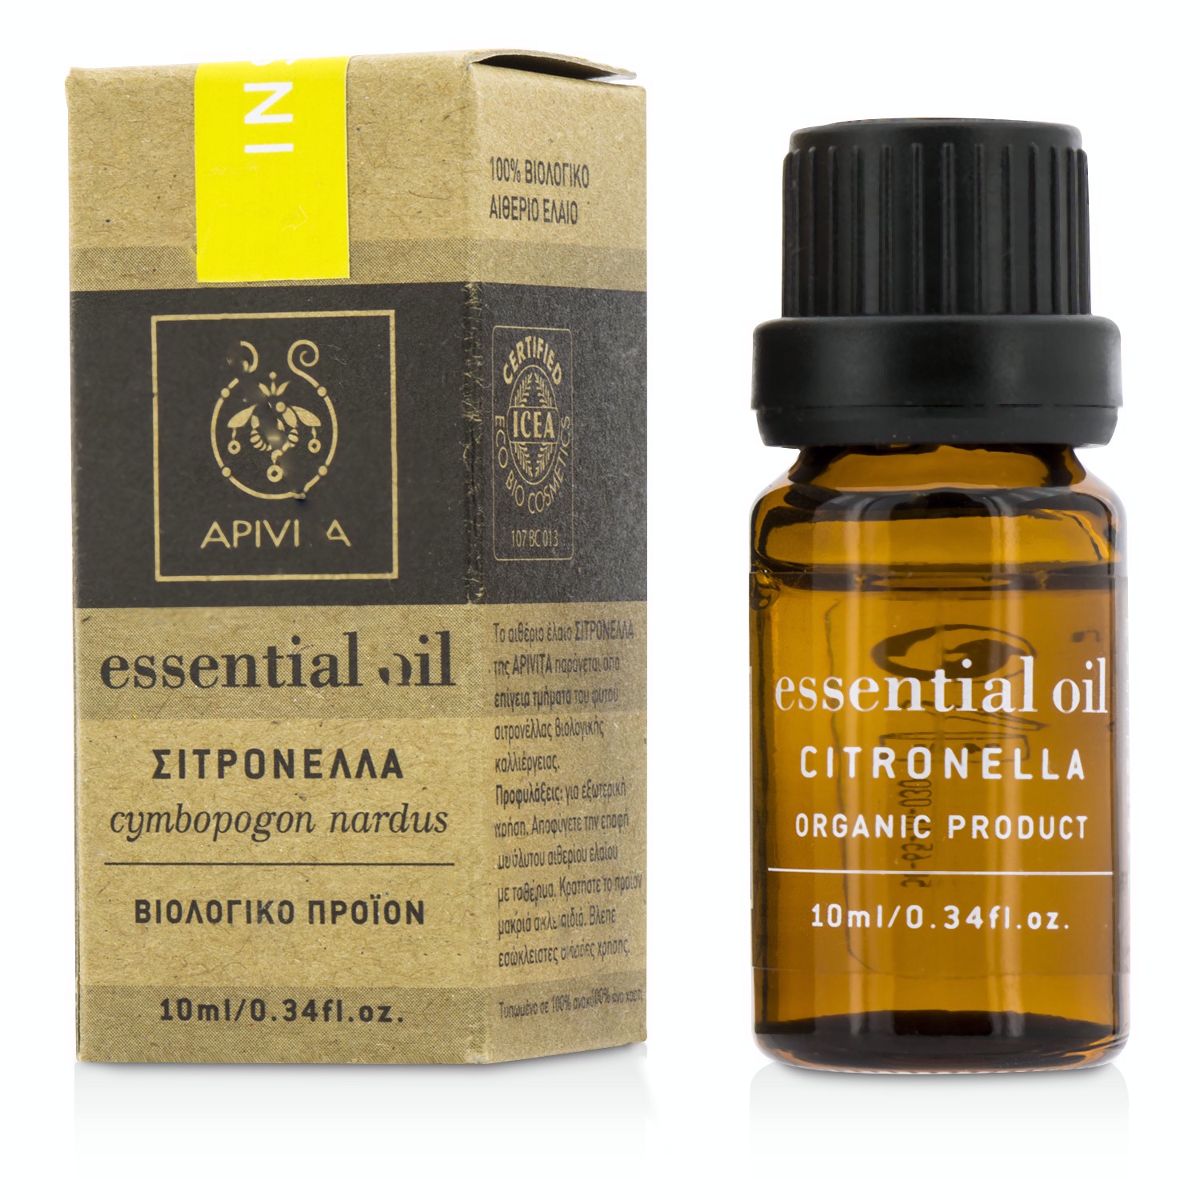 Essential Oil - Citronella Apivita Image